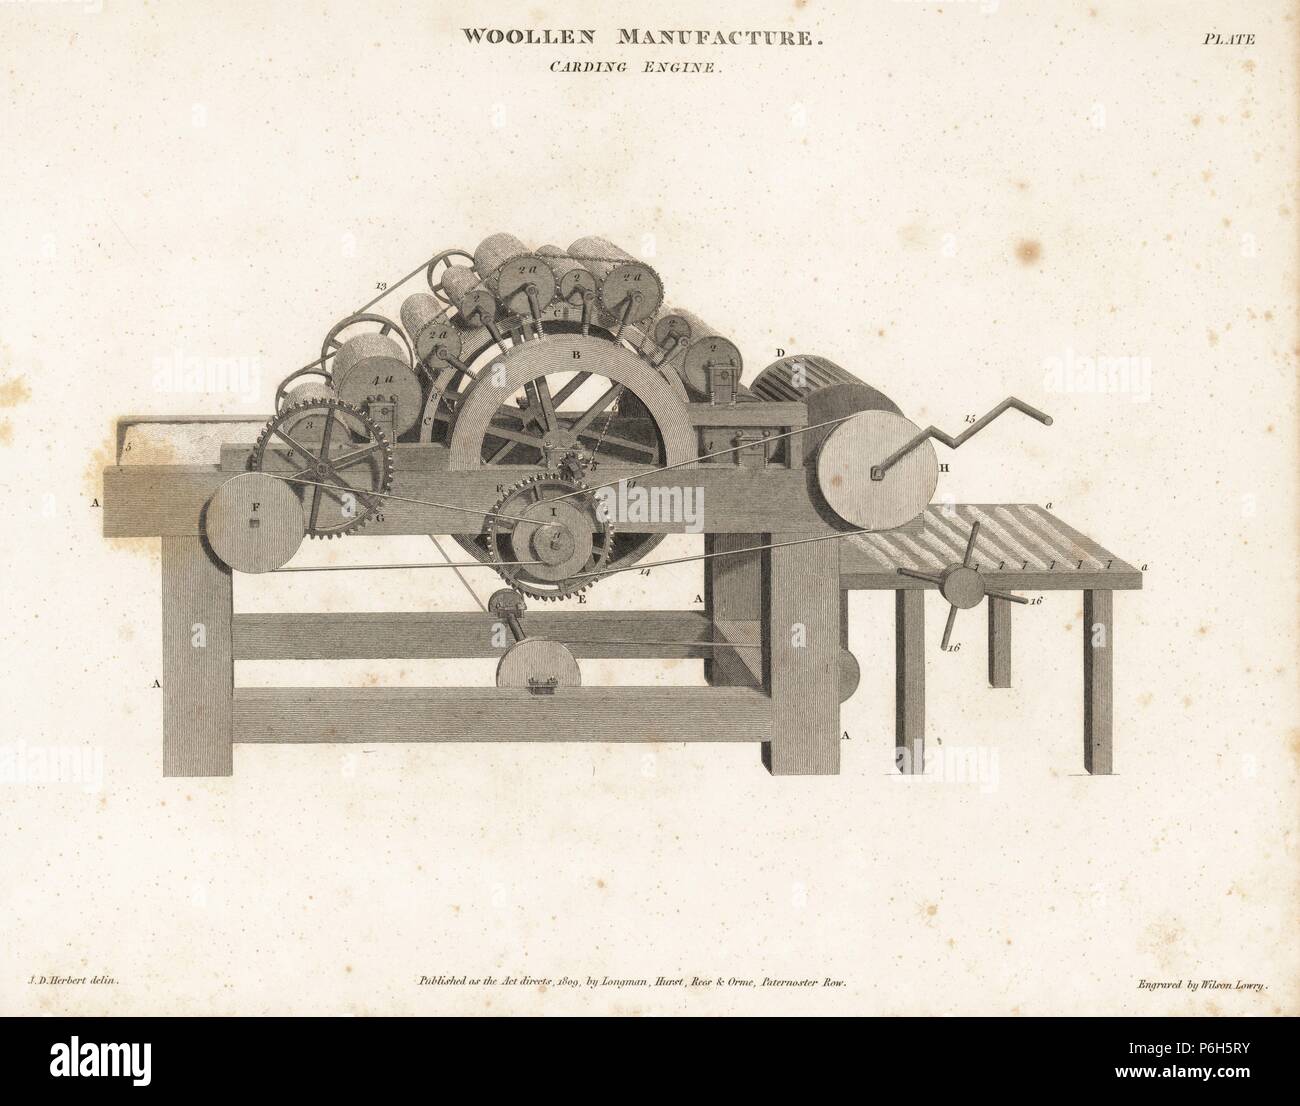 Carding Motor für Wolle, 18. Kupferstich von Wilson Lowry von Abraham Rees'' Cyclopedia oder Universal Wörterbuch", London, 1809. Stockfoto